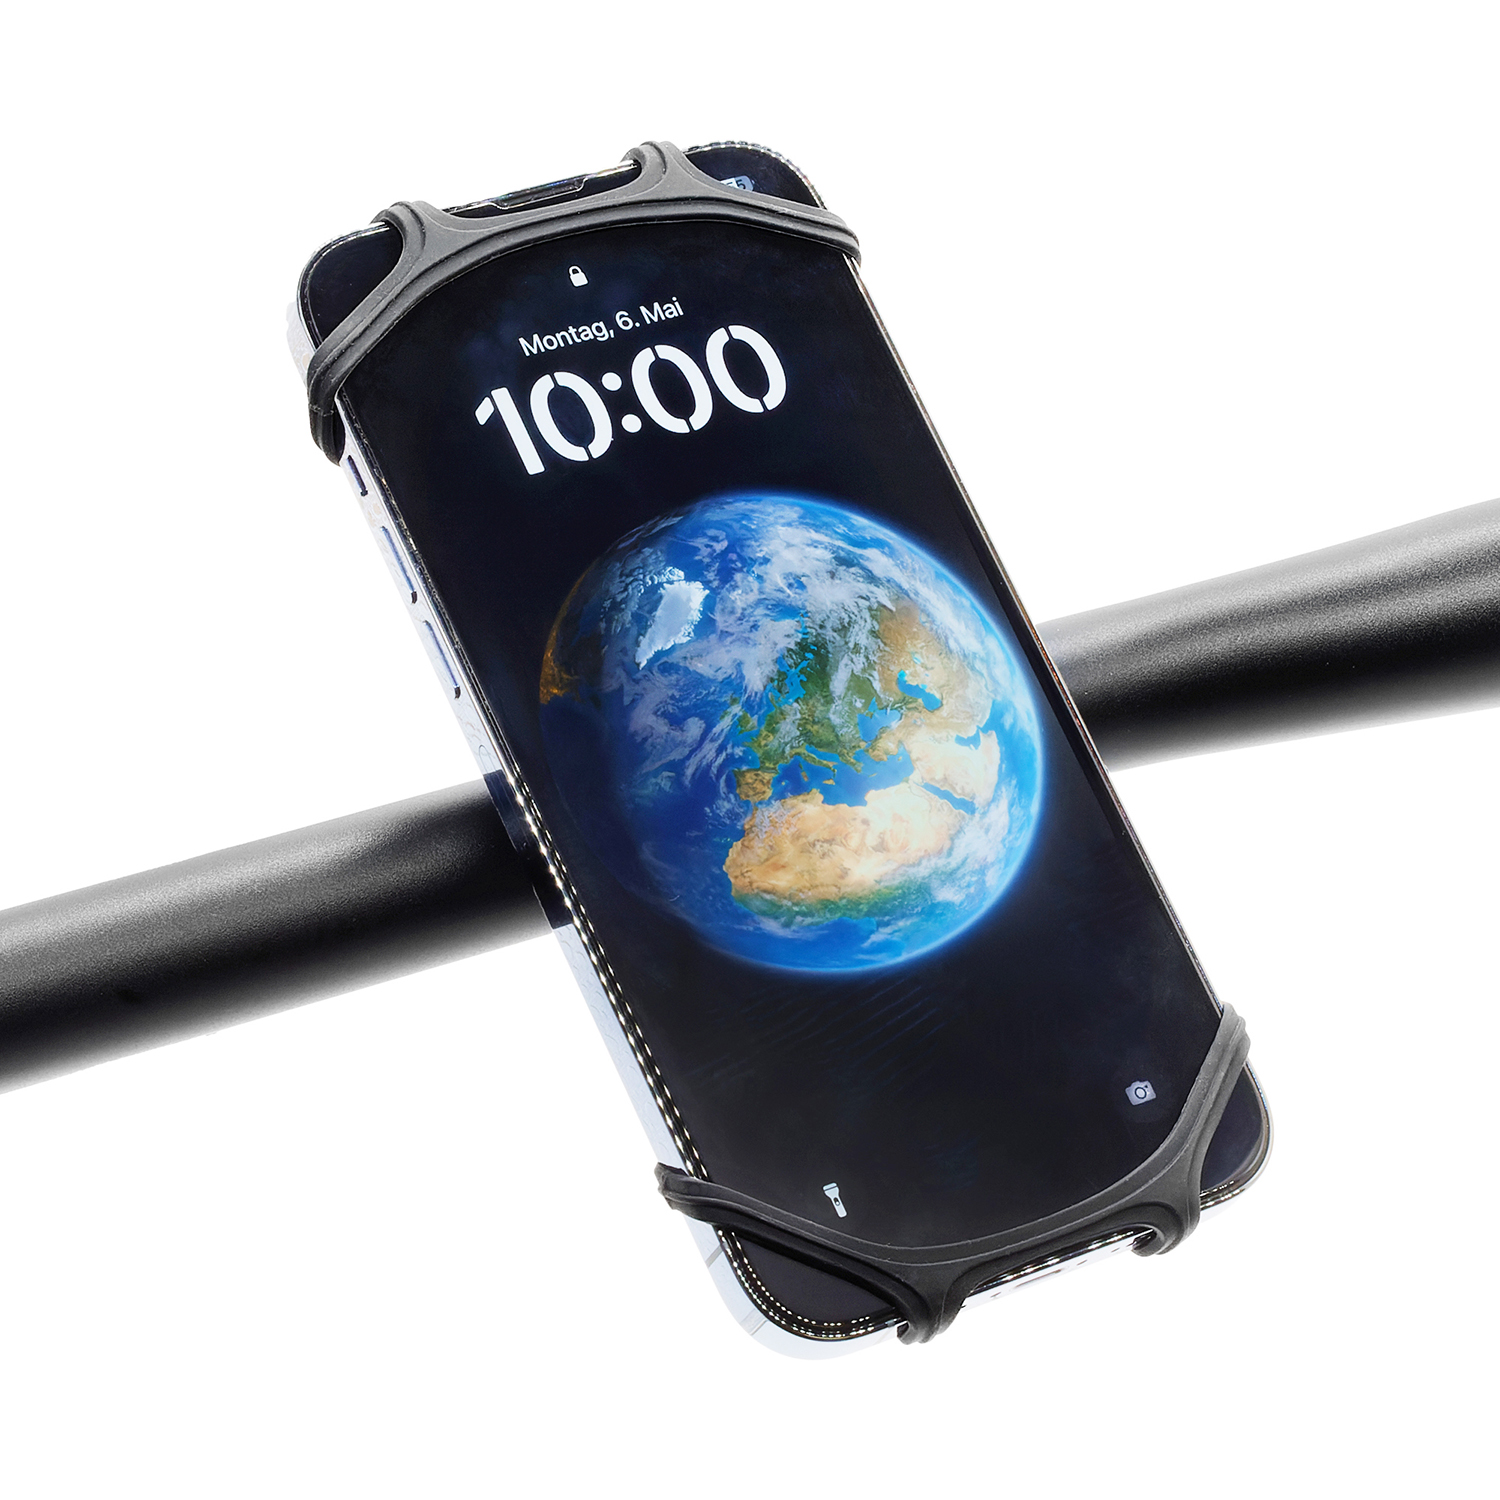 LYNX Halter für Smartphone aus Silikon in schwarz